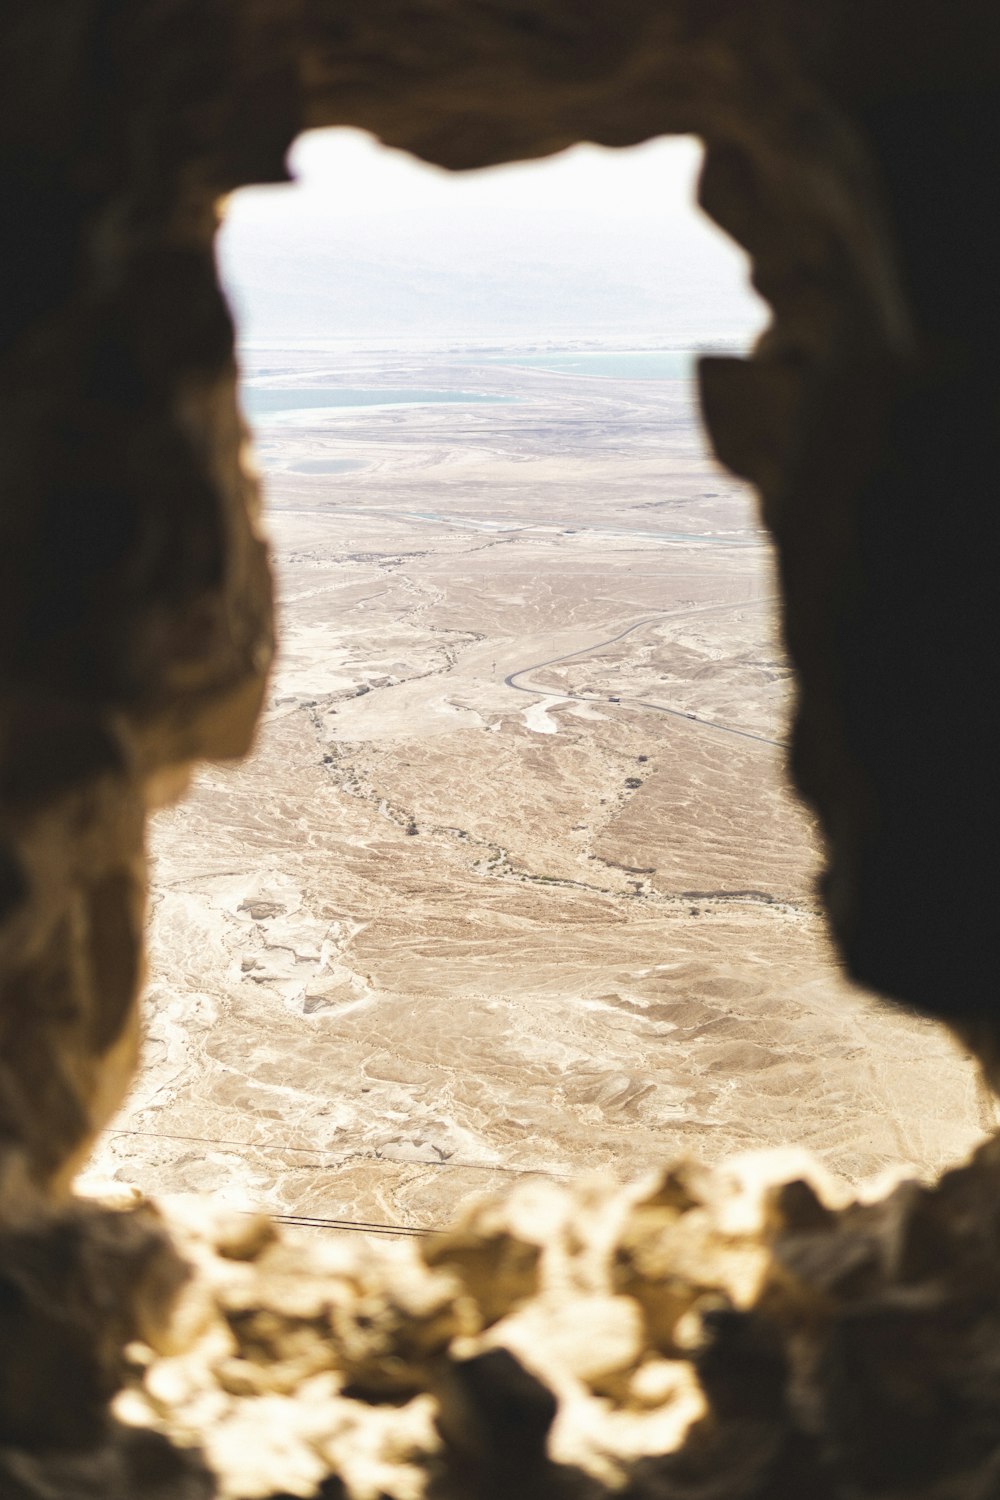 Masada National Park at Israel